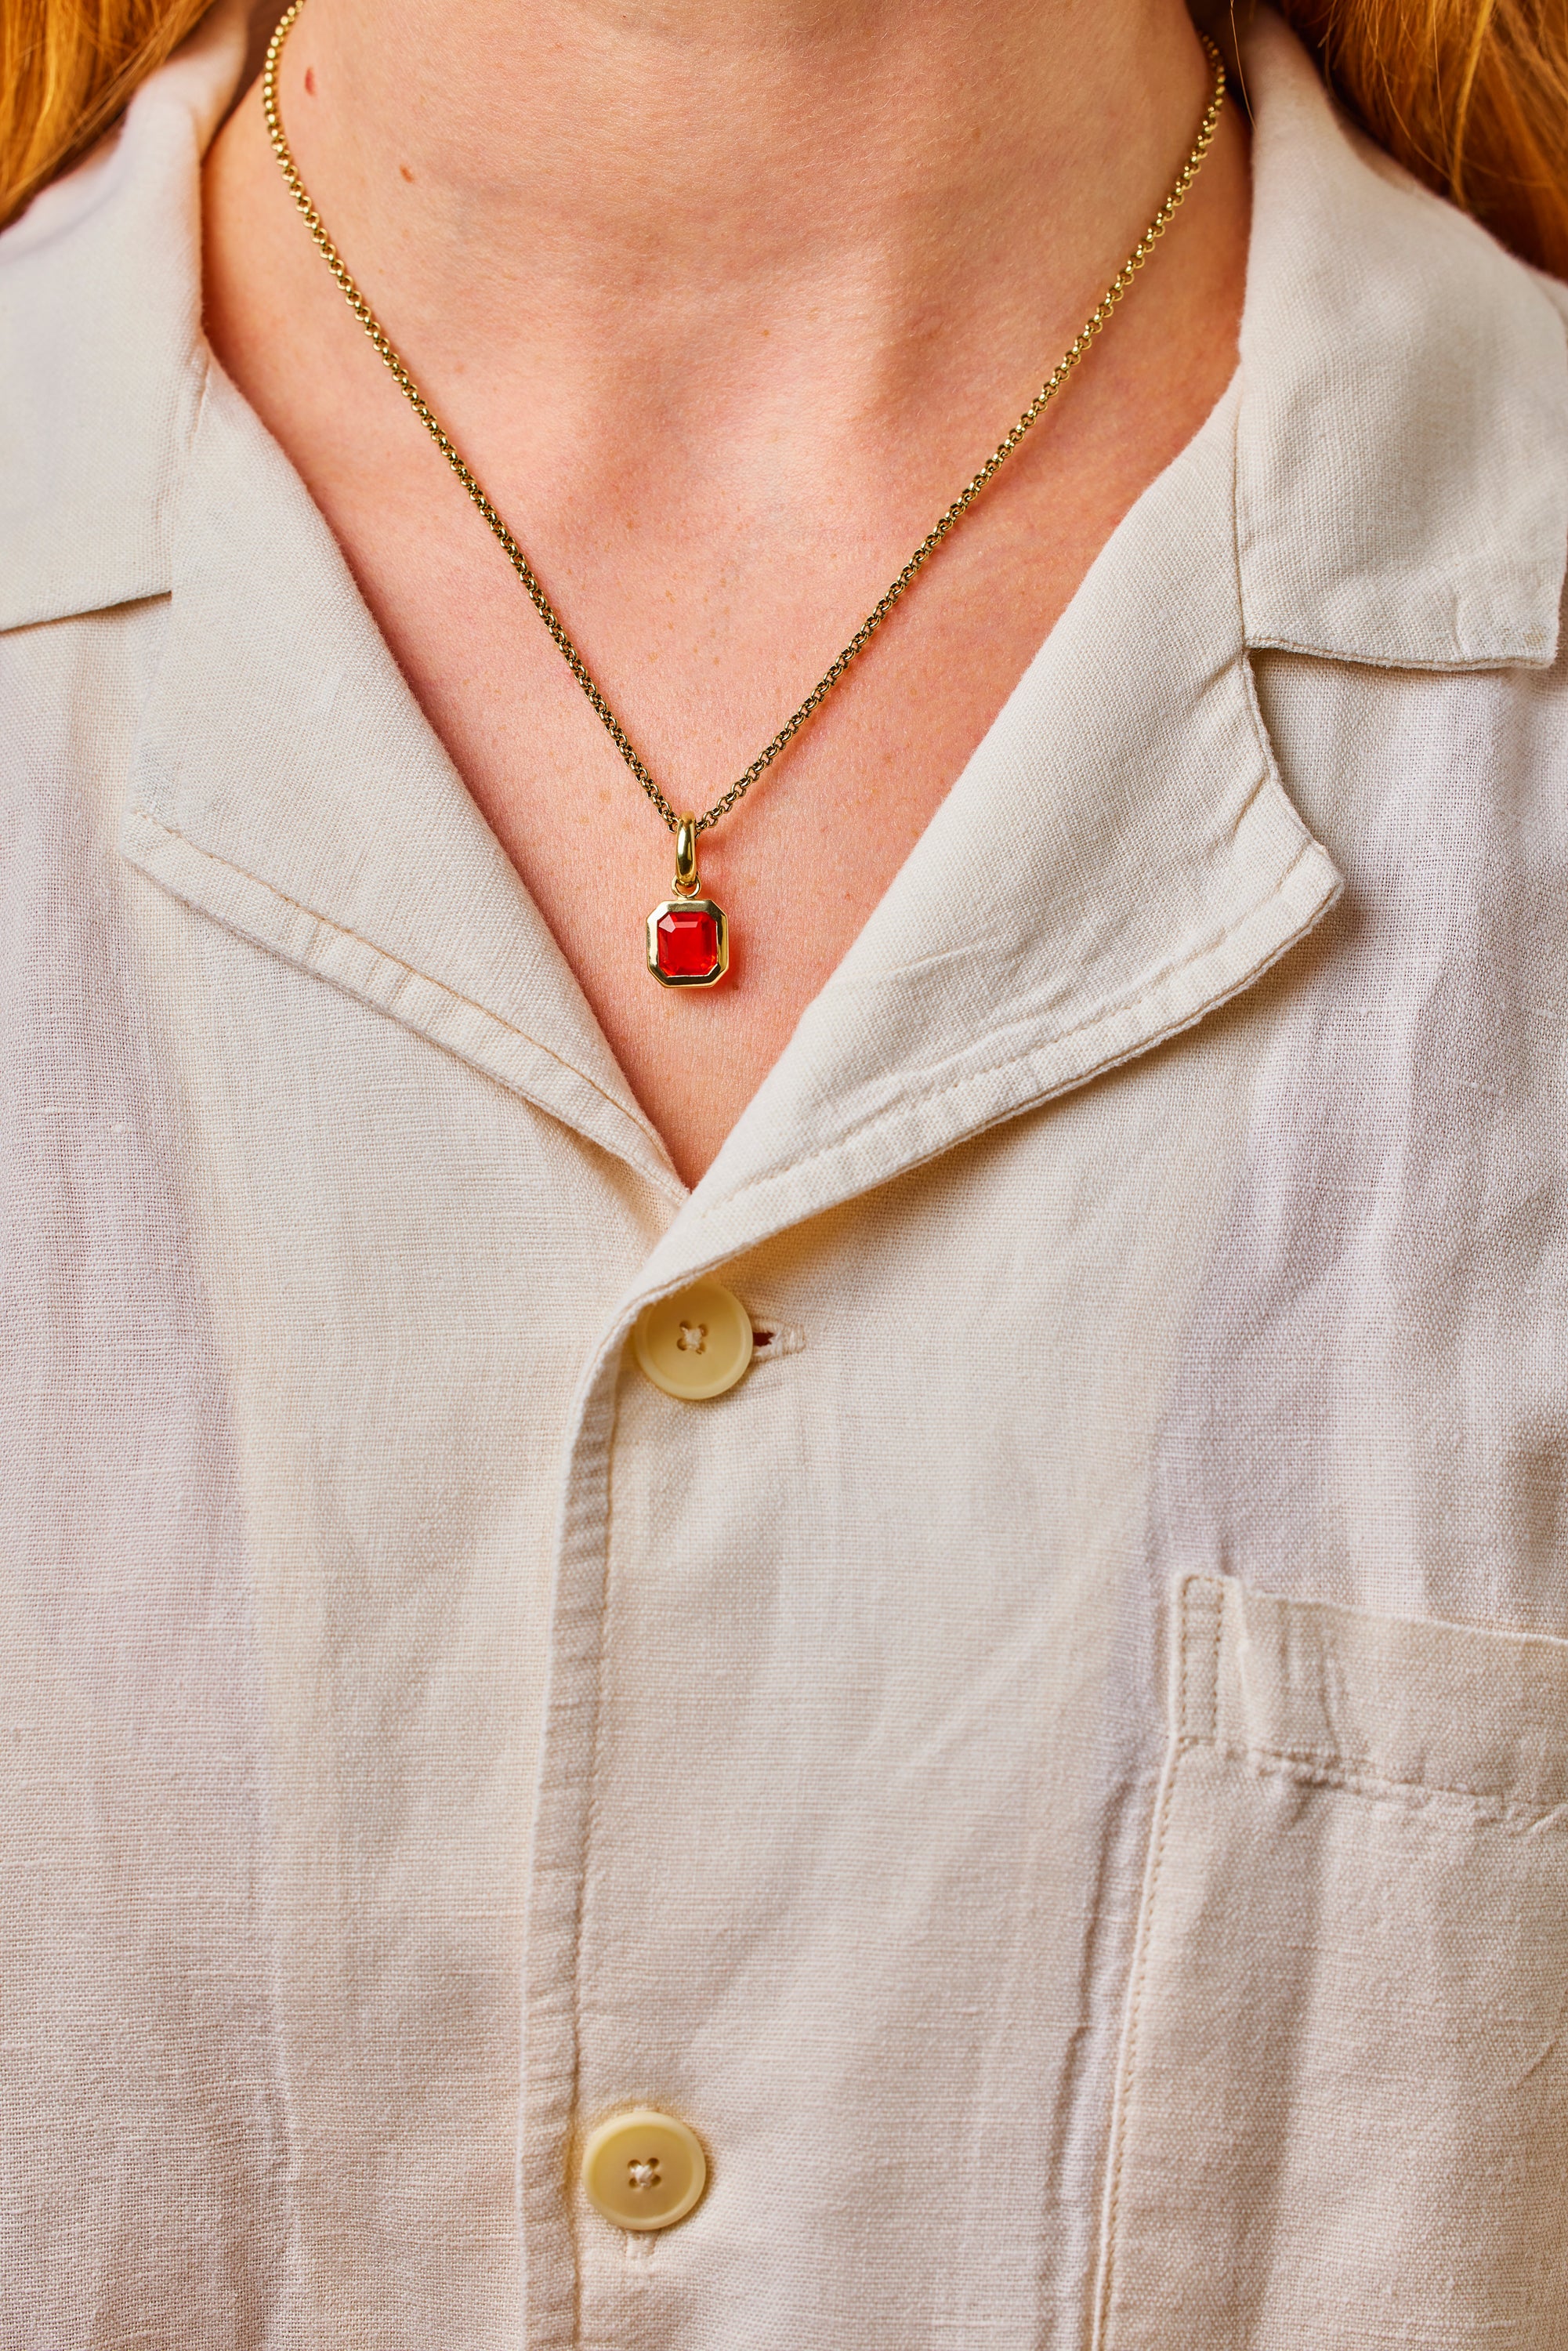 Fire Opal pendant. Fire opal necklace. Red Gemstone pendant. Red gemstone necklace. Red gemstone jewellery. Fire opal jewellery. Handmade ring. Fine jewellery. Serena Ansell jewellery. London jeweller. 